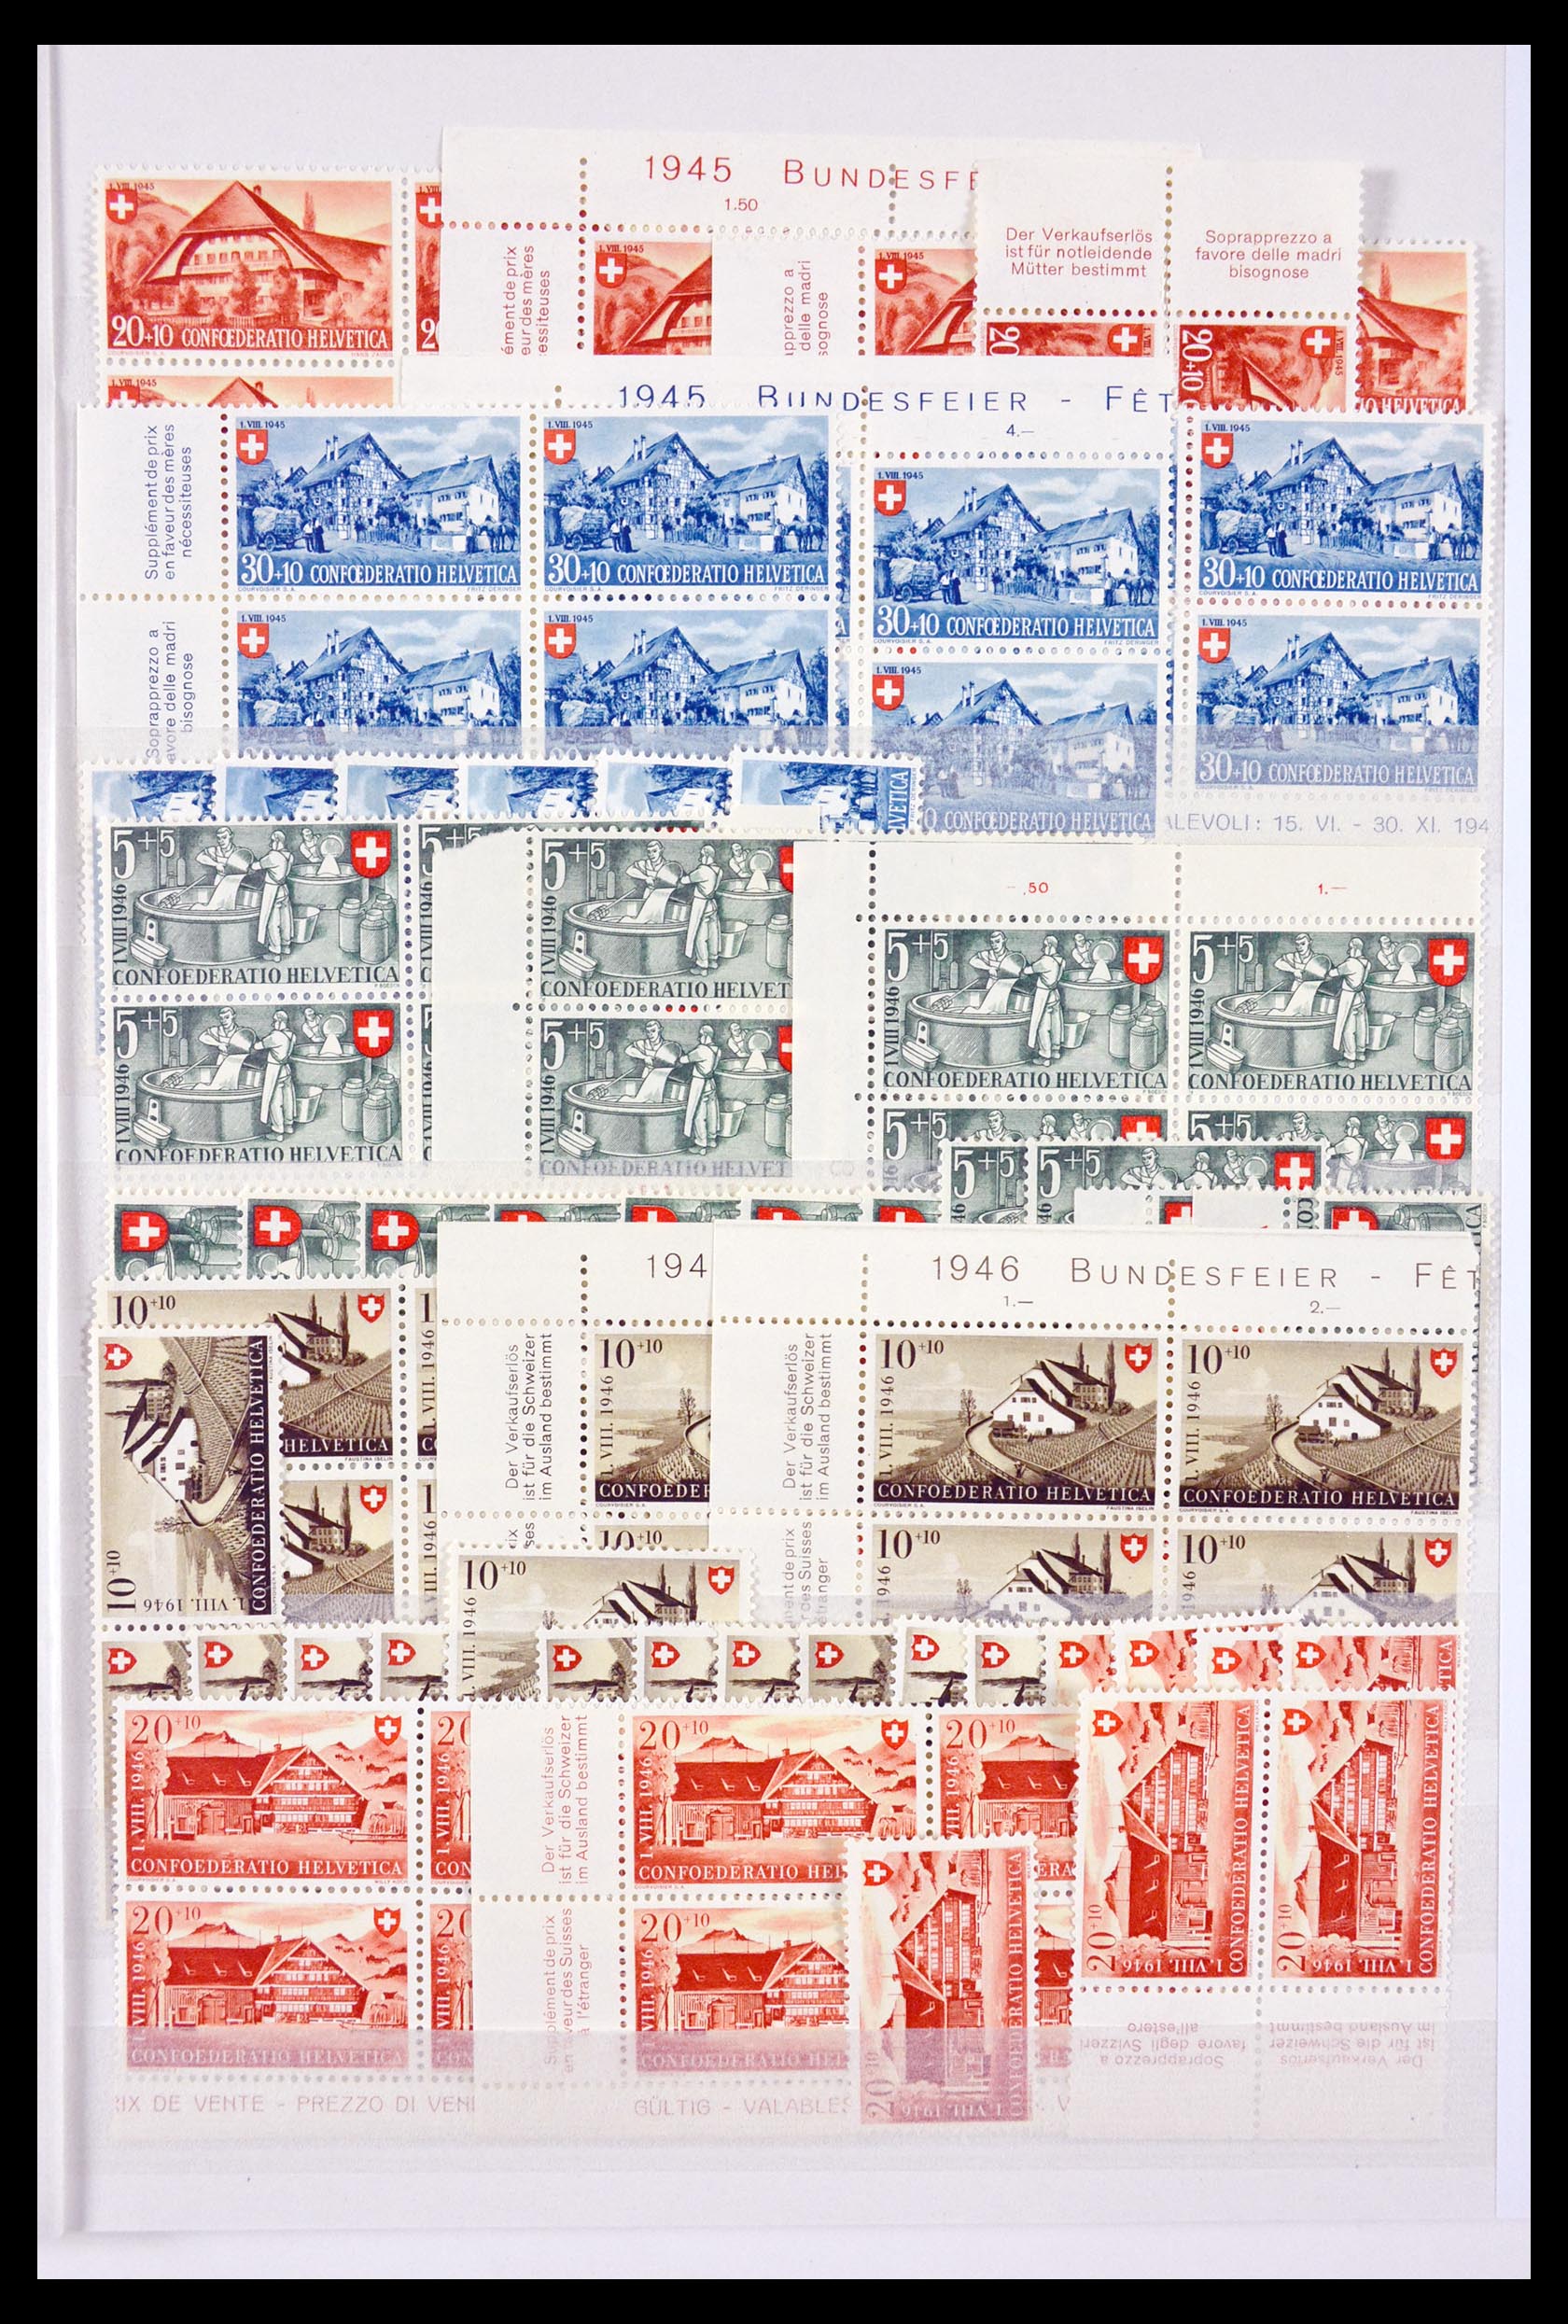 29604 071 - 29604 Zwitserland 1882-1960.